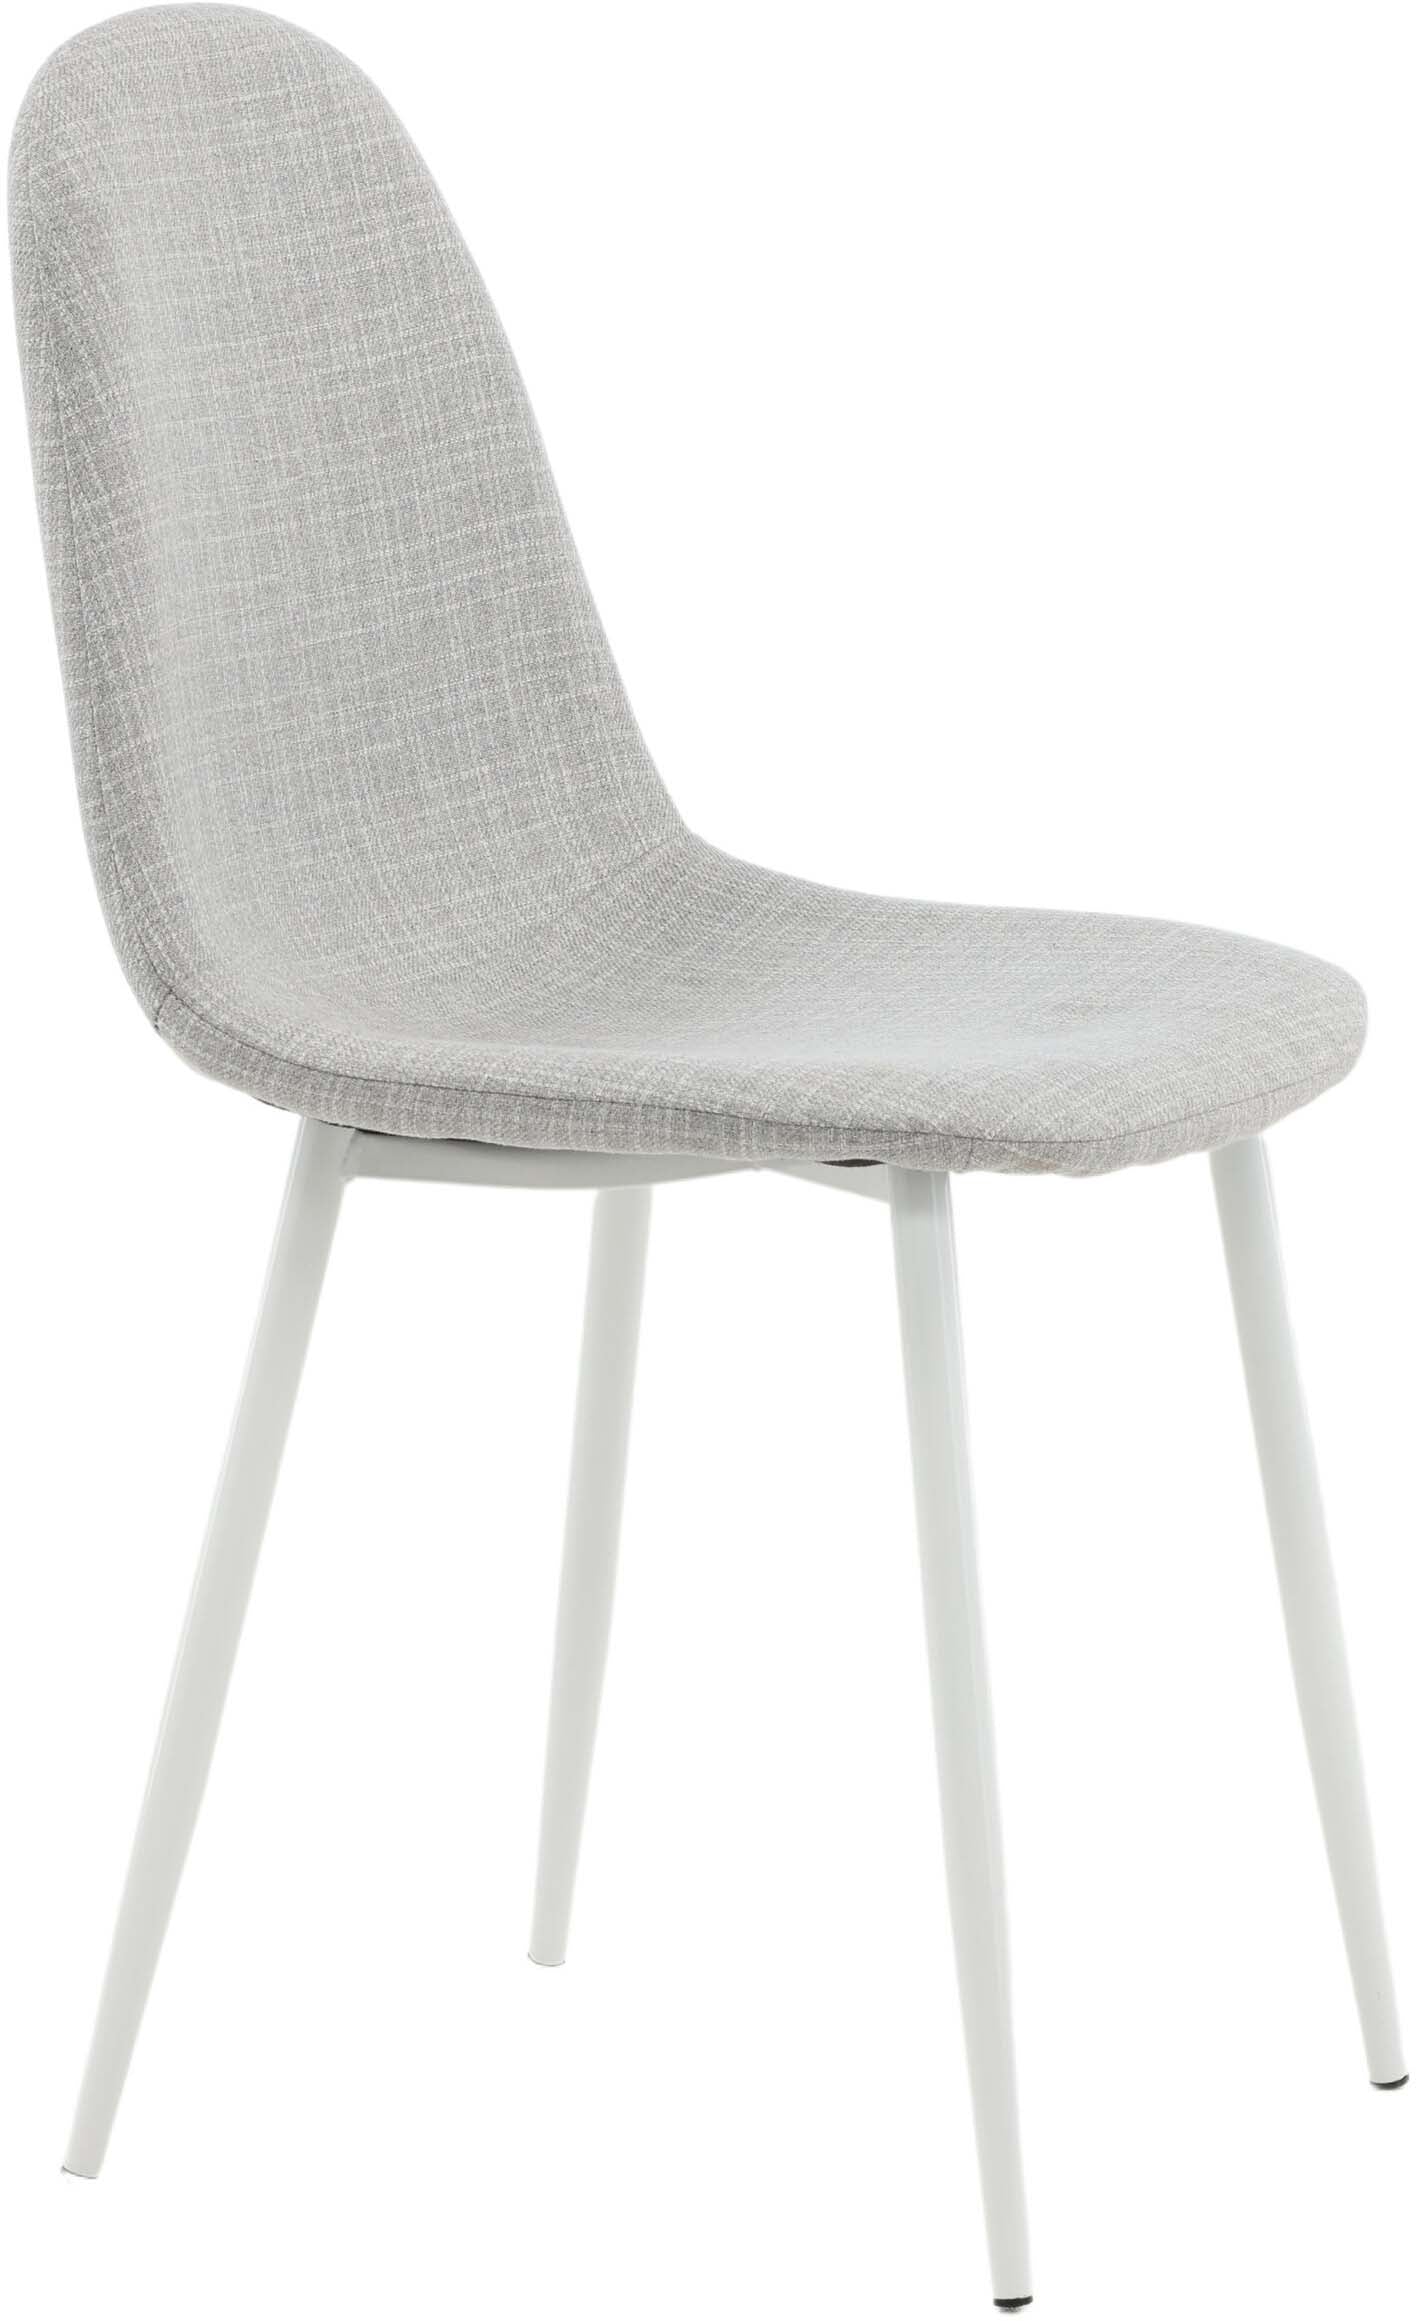 Polar Stuhl in Grau/Weiss präsentiert im Onlineshop von KAQTU Design AG. Stuhl ist von Venture Home